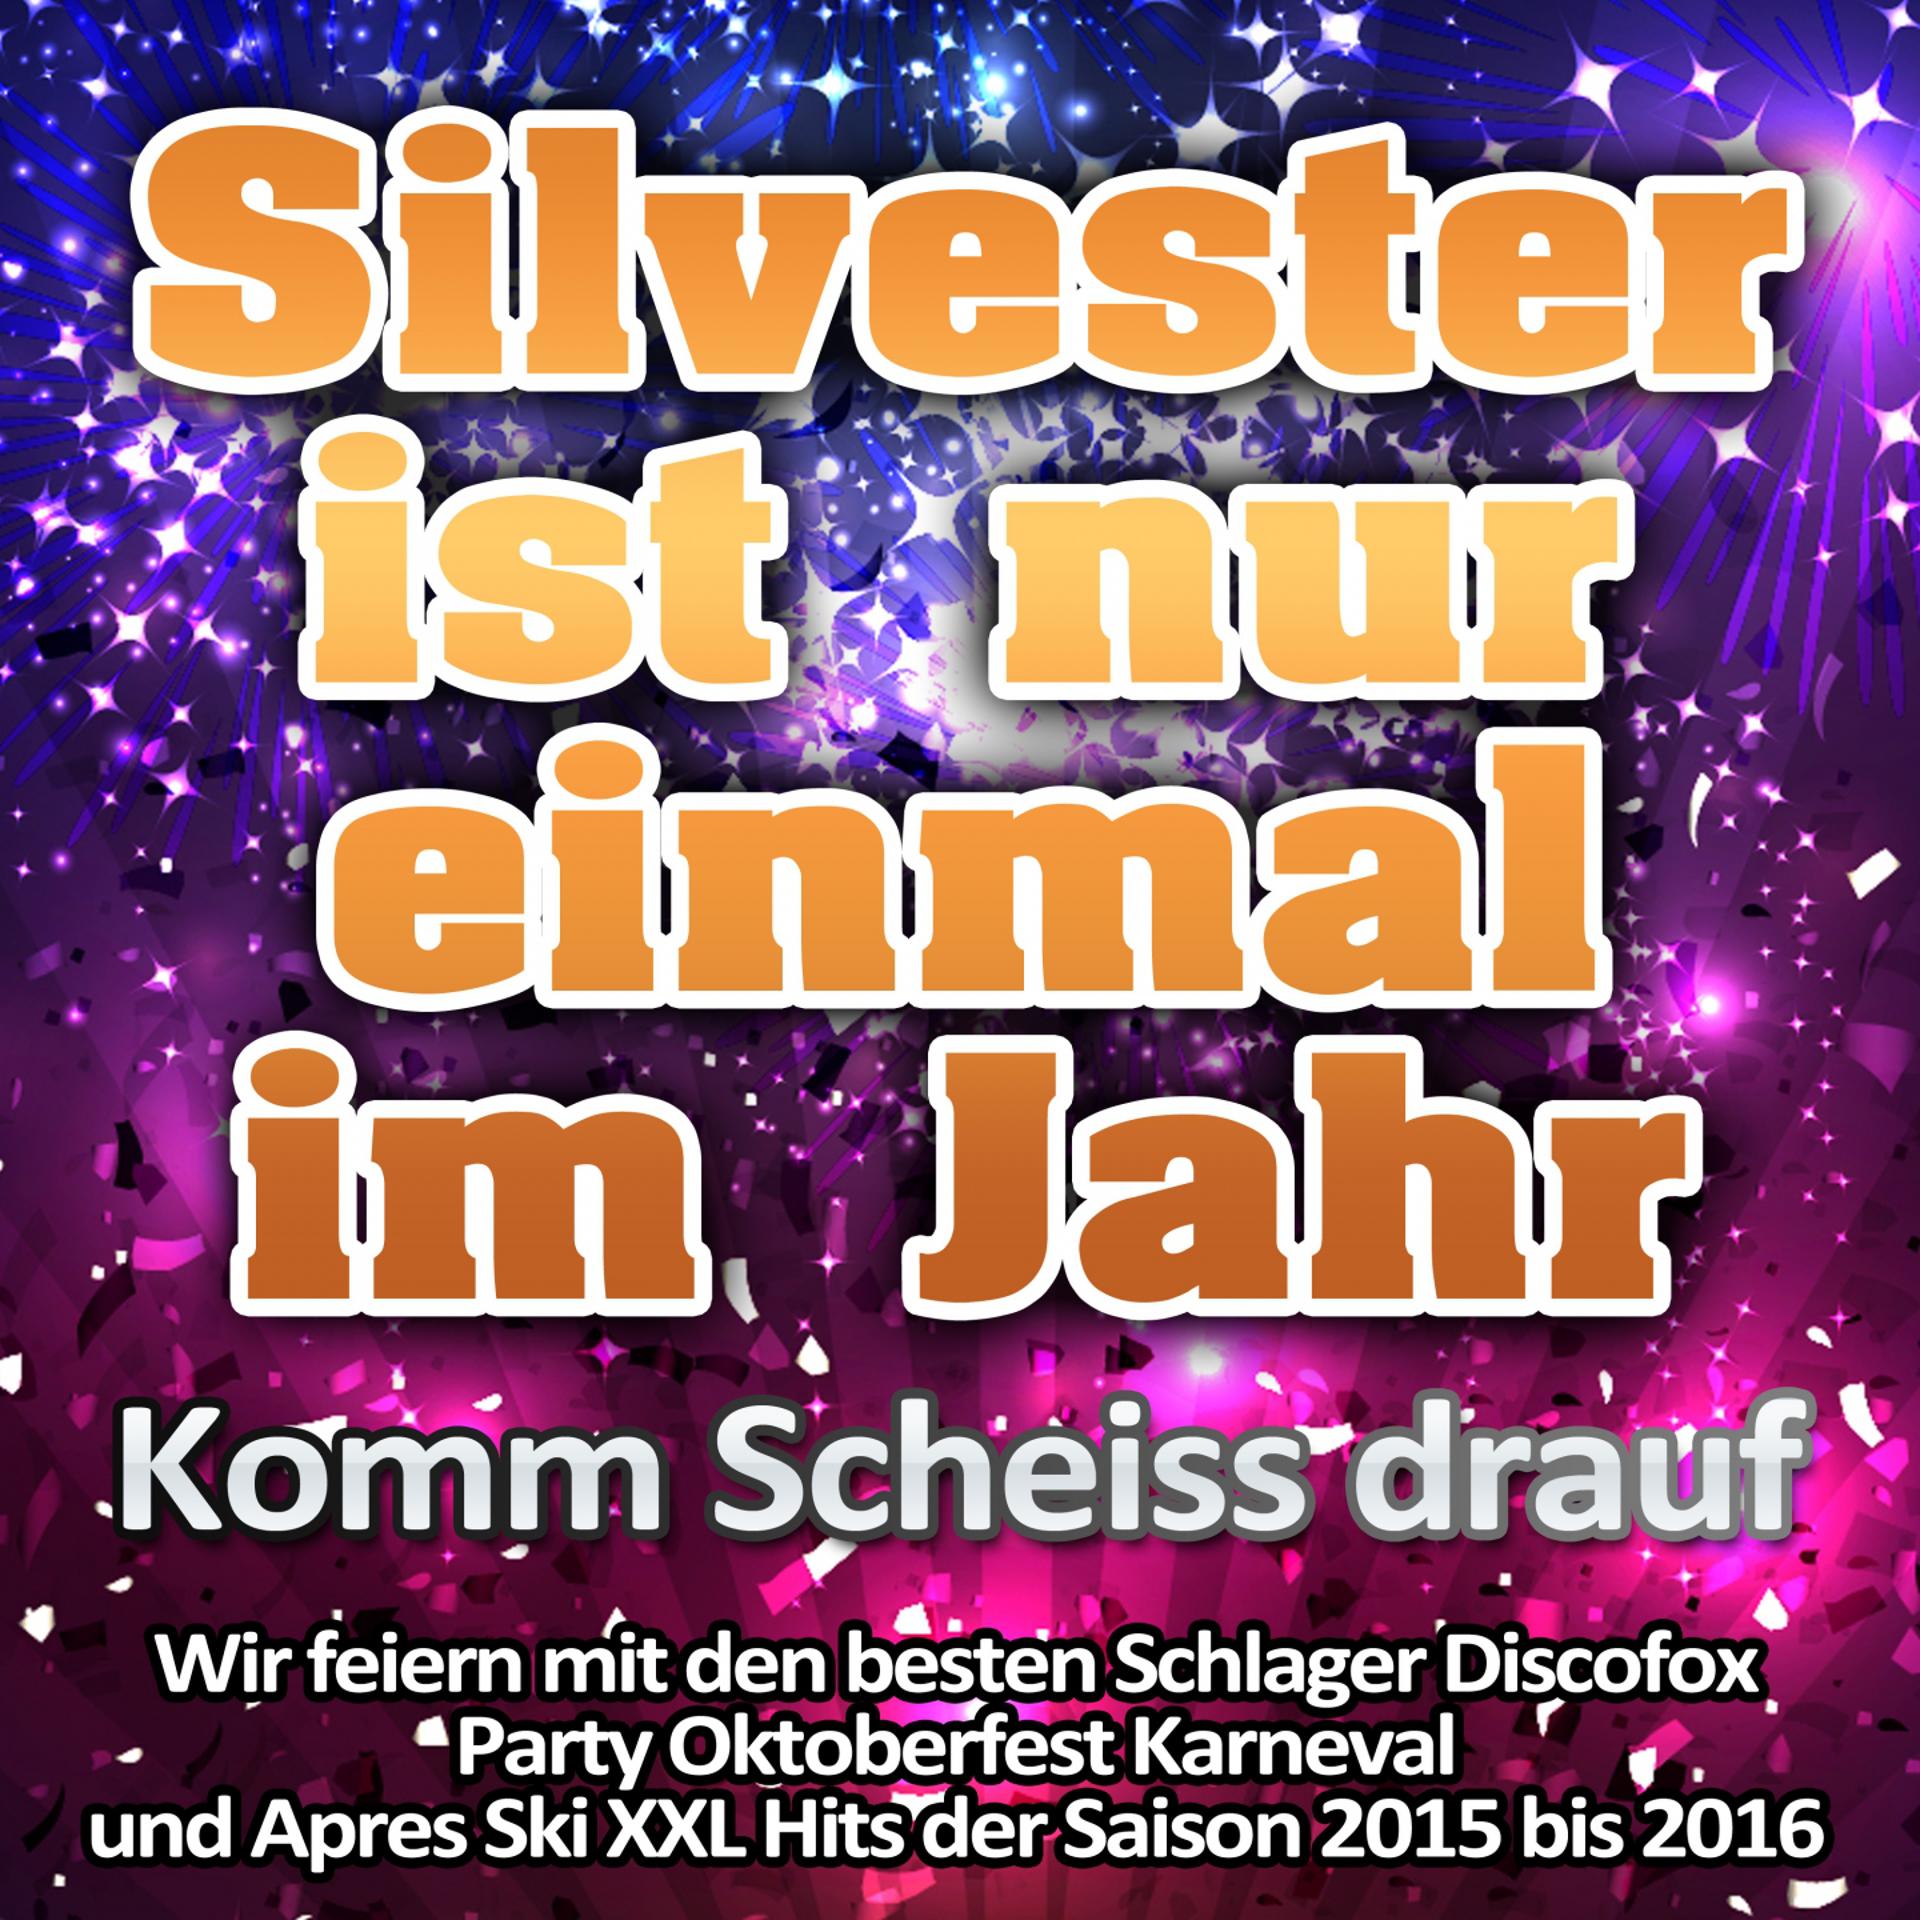 Постер альбома Silvester ist nur einmal im Jahr - Komm Scheiss drauf (Wir feiern mit den besten Schlager Discofox Party Oktoberfest Karneval und Apres Ski XXL Hits der Saison 2015 bis 2016)